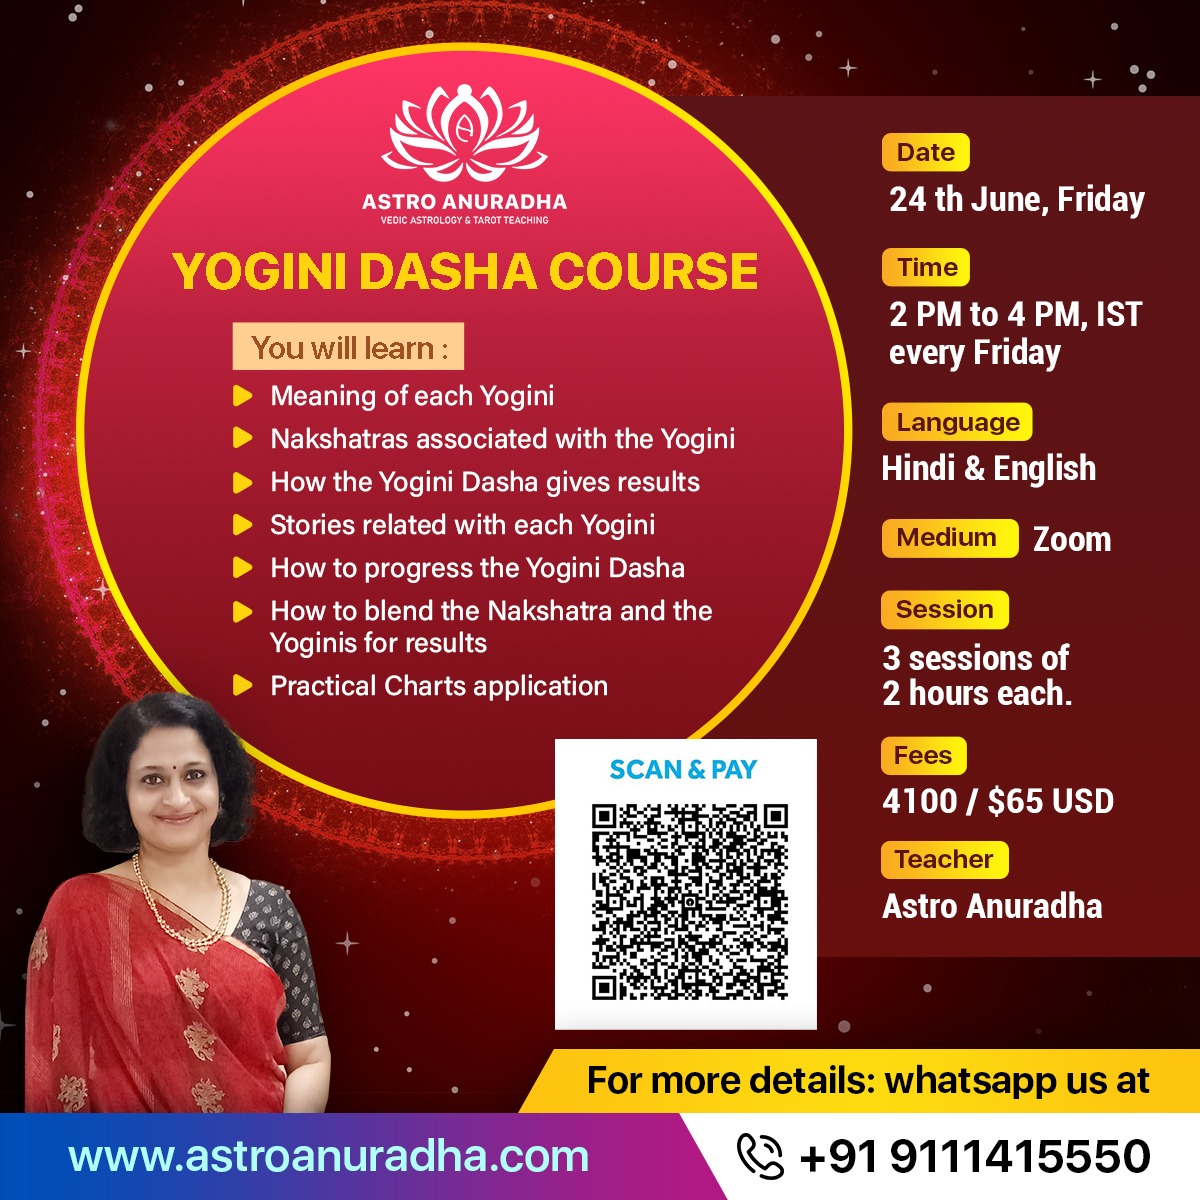 Yogini Dasha Course in English